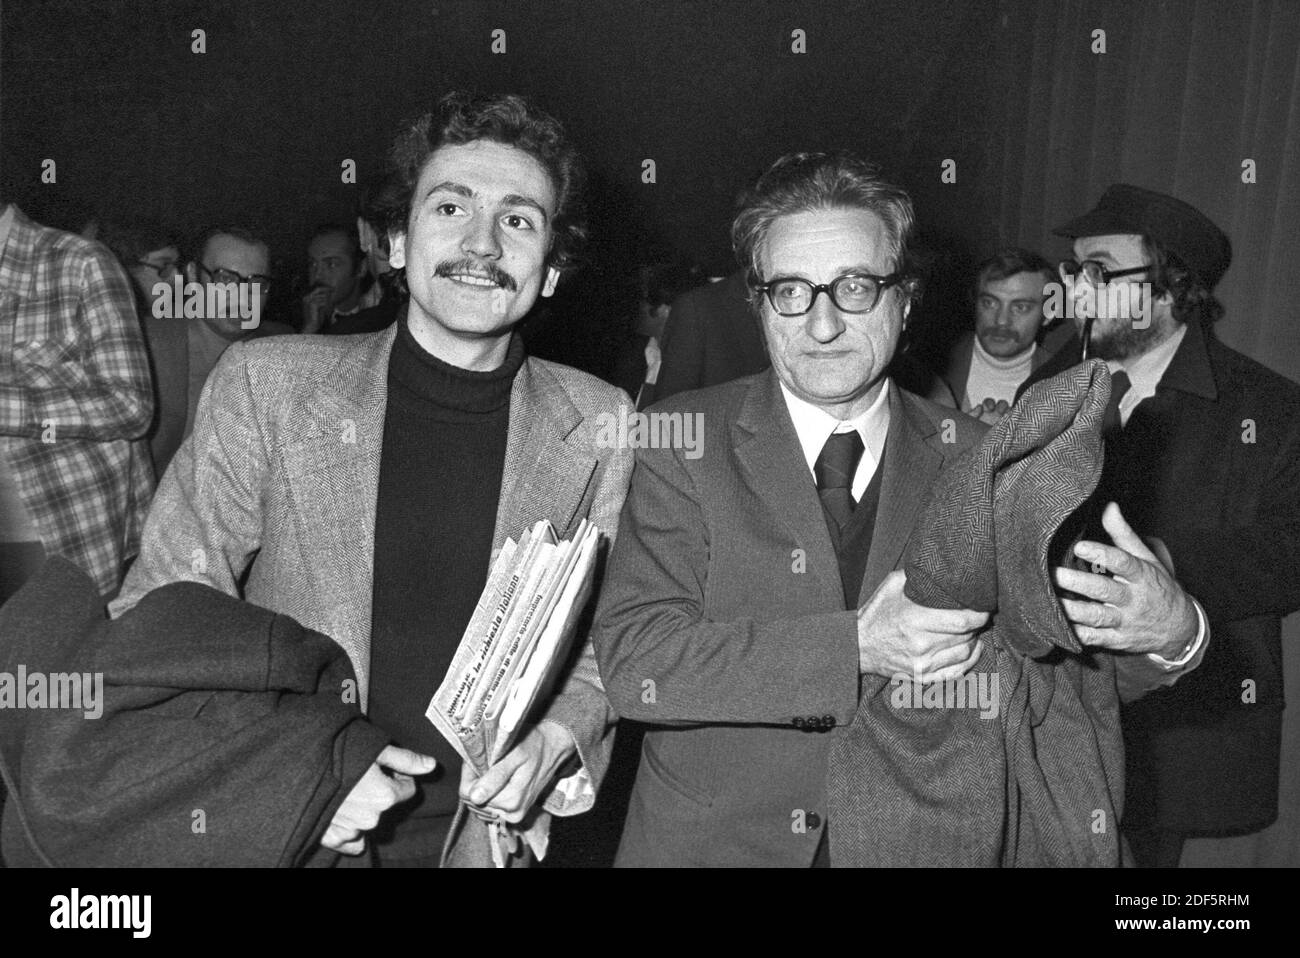 - Massimo D'Alema ed Aldo Tortorella del PCI (Partito Comunista Italiano), Roma, 1976....- Massimo D'Alema e Aldo Tortorella of PCI (Italian Communist Party), Rome, 1976 Stock Photo